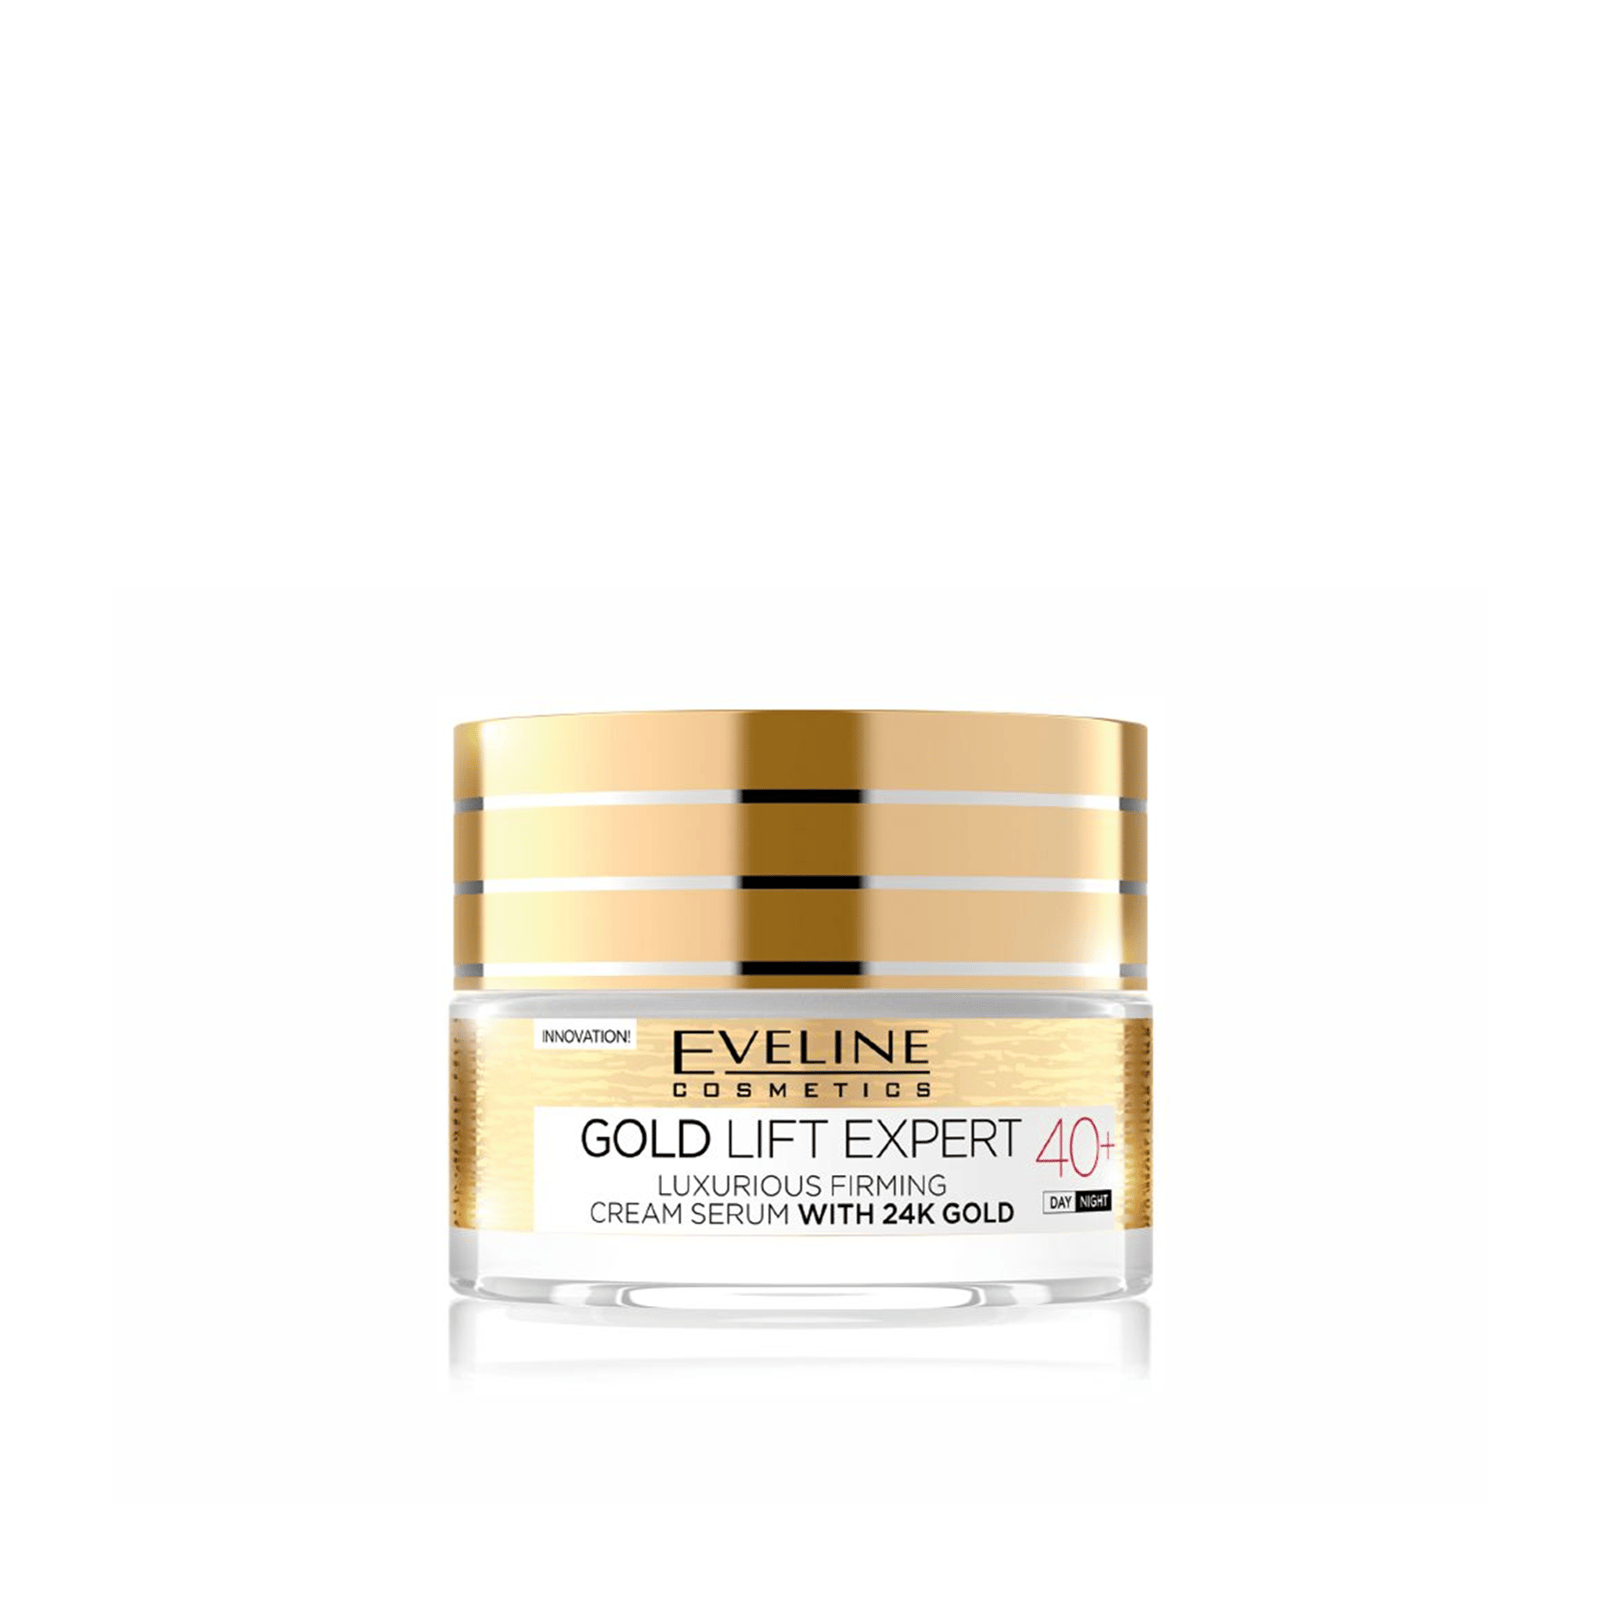 Eveline Cosmetics Gold Lift Expert 40+ Luxurious Firming Cream Serum 50ml